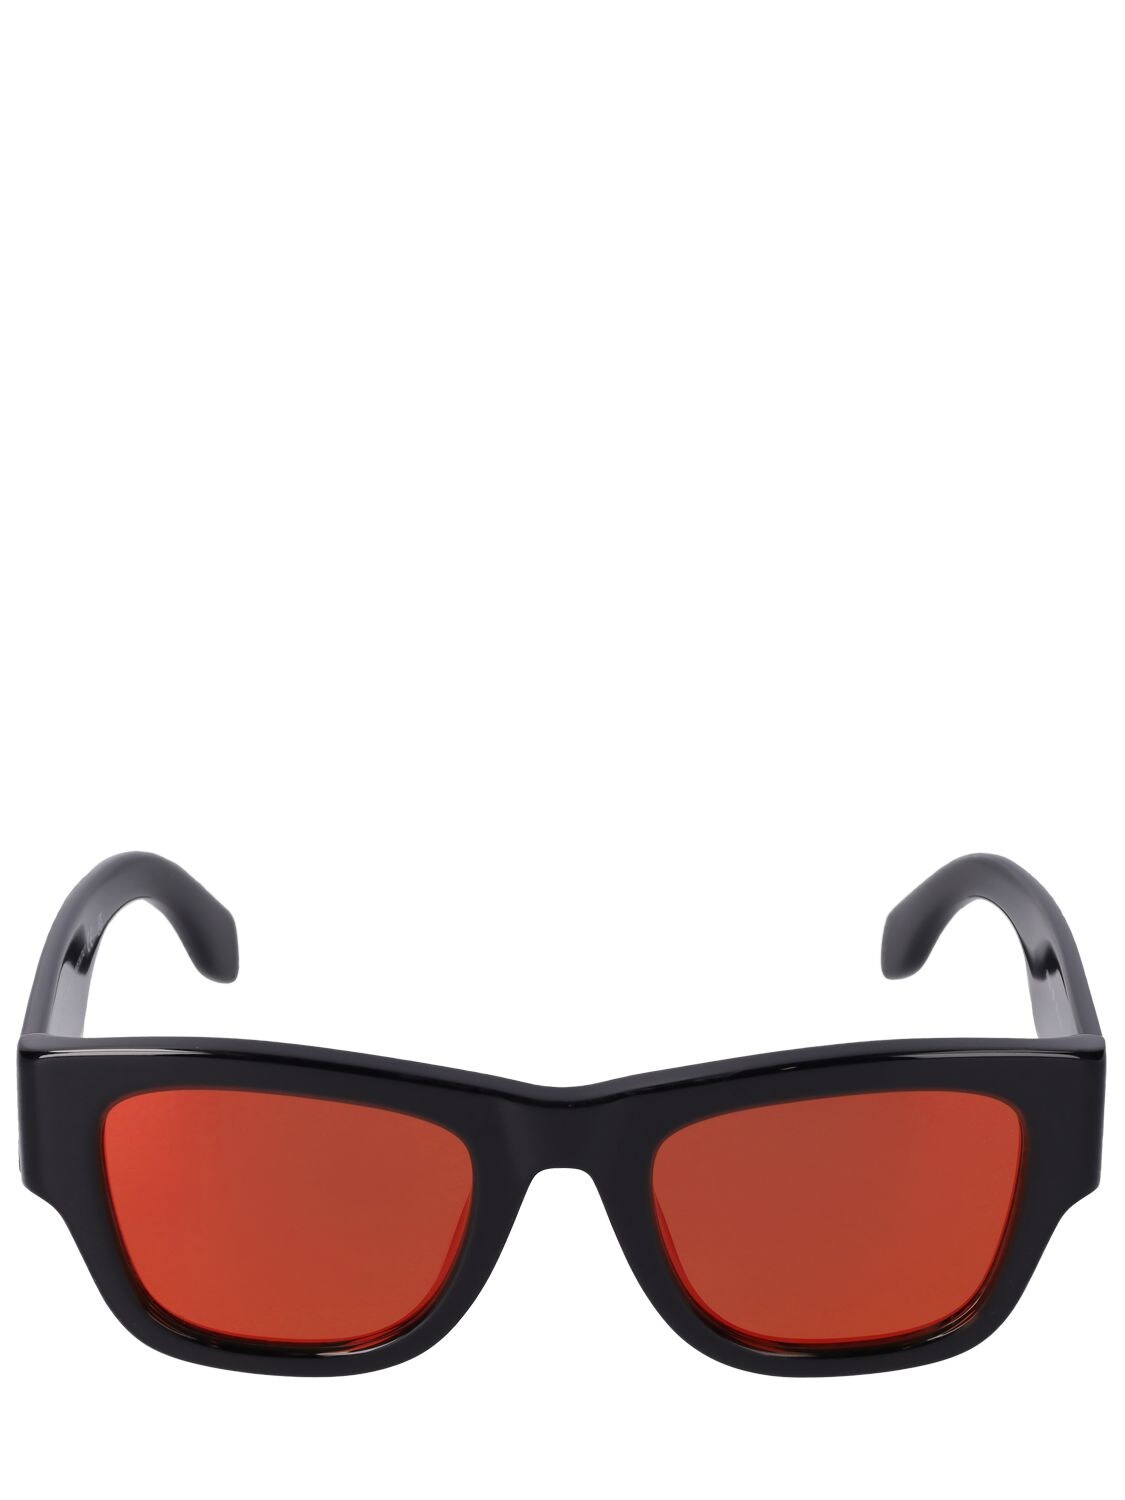 Volcan Squared Acetate Sunglasses